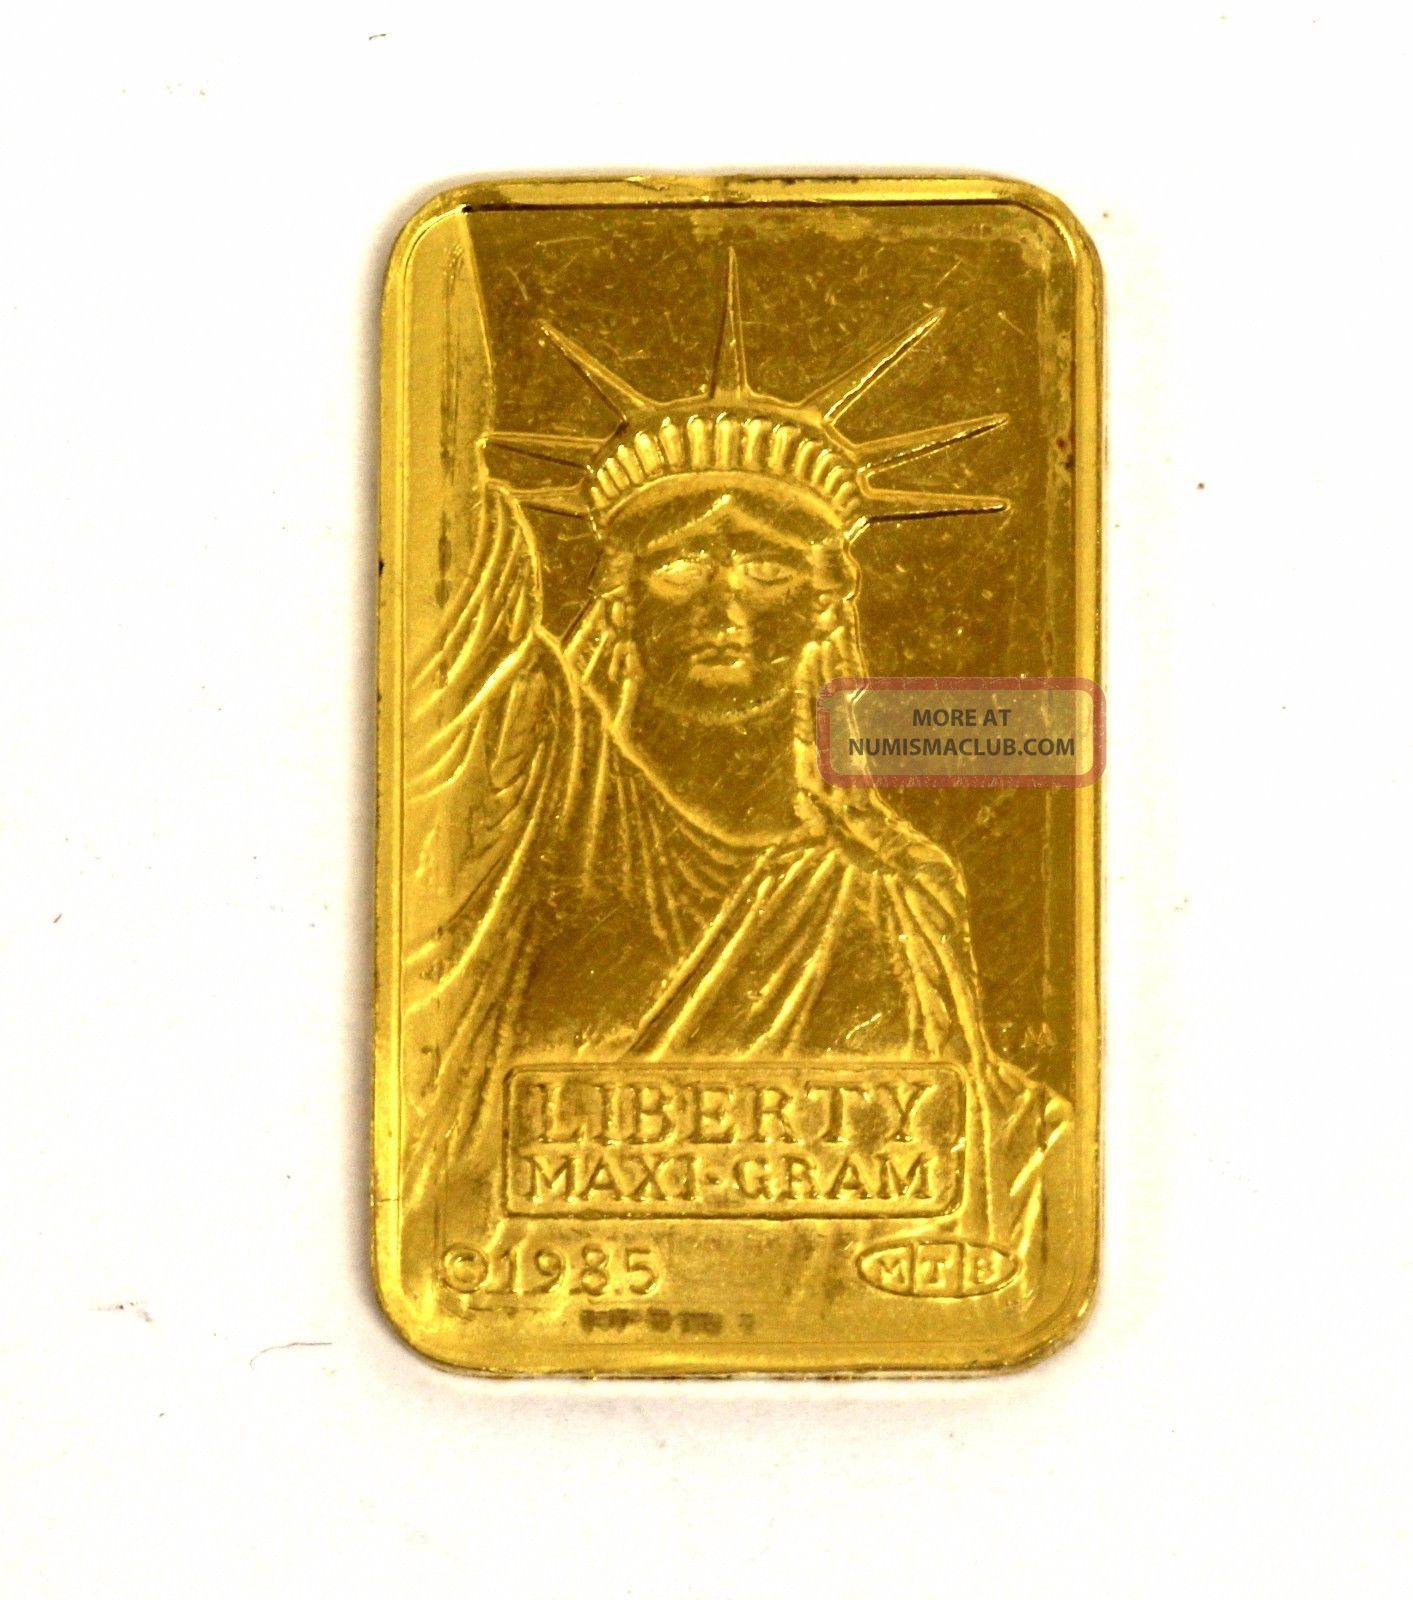 5g credit suisse gold bar